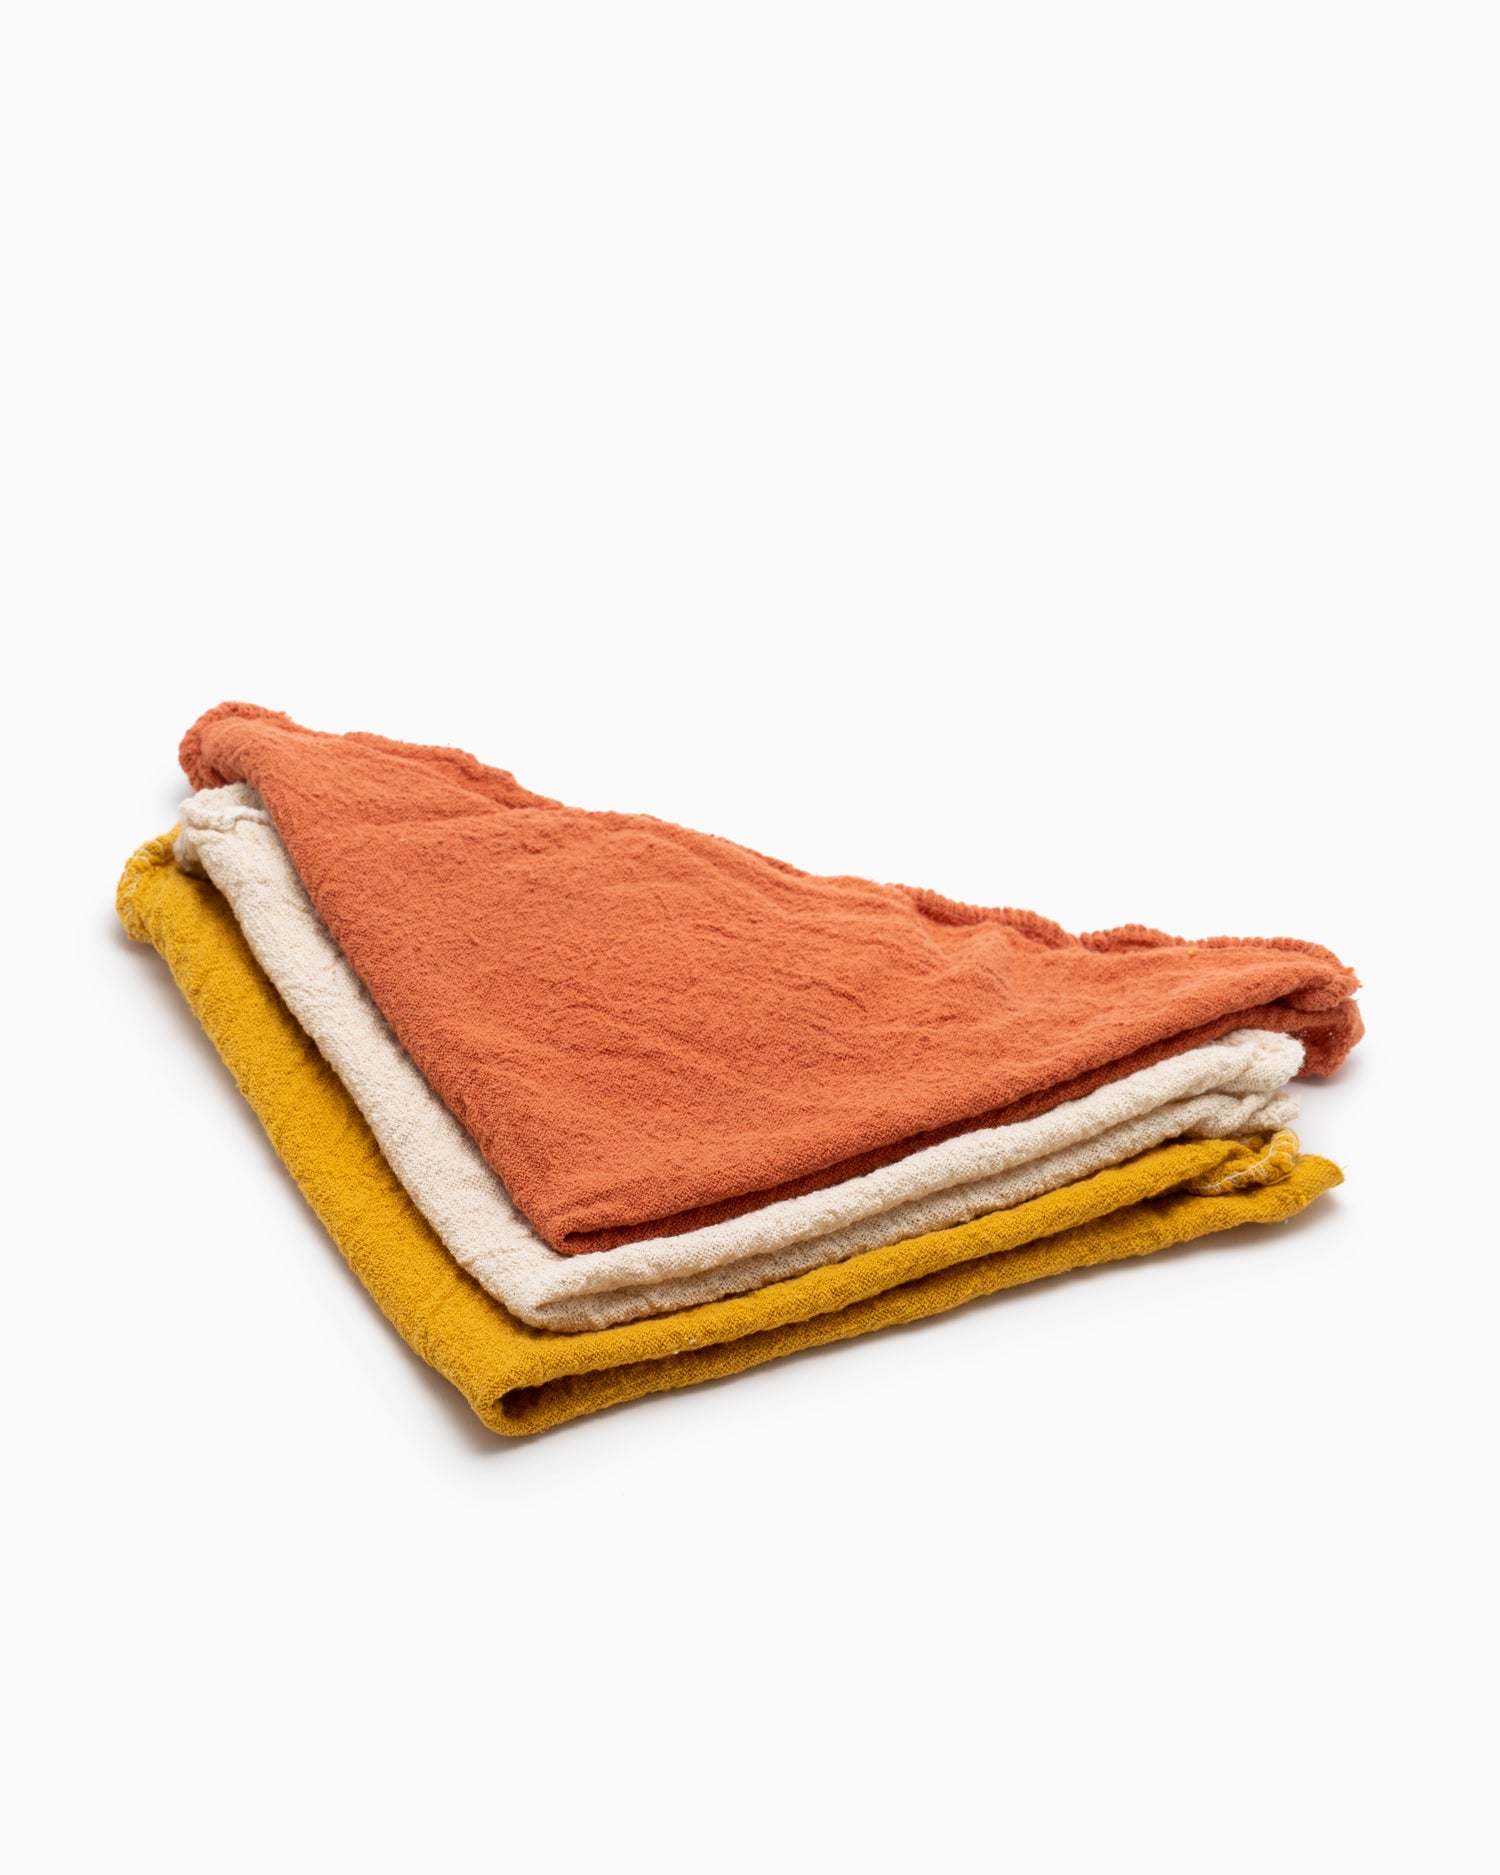 Multipurpose Cleaning Cloth Set - Orange